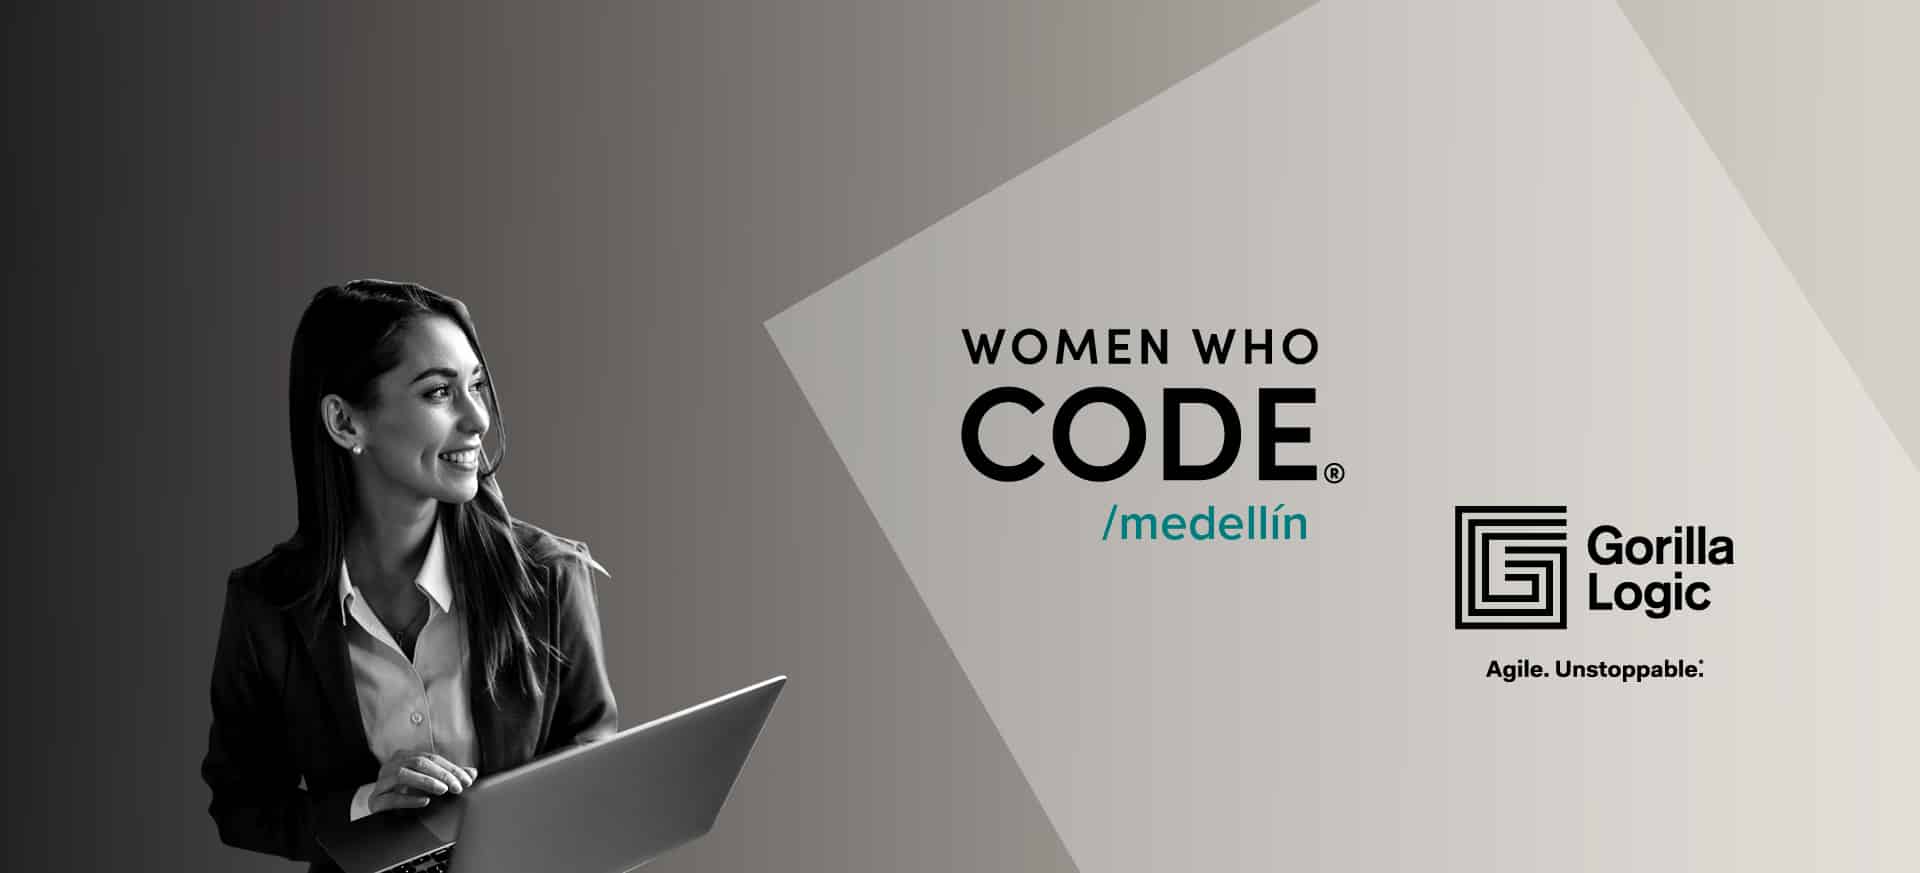 Gorilla Logic sponsors Women Who Code Medellín